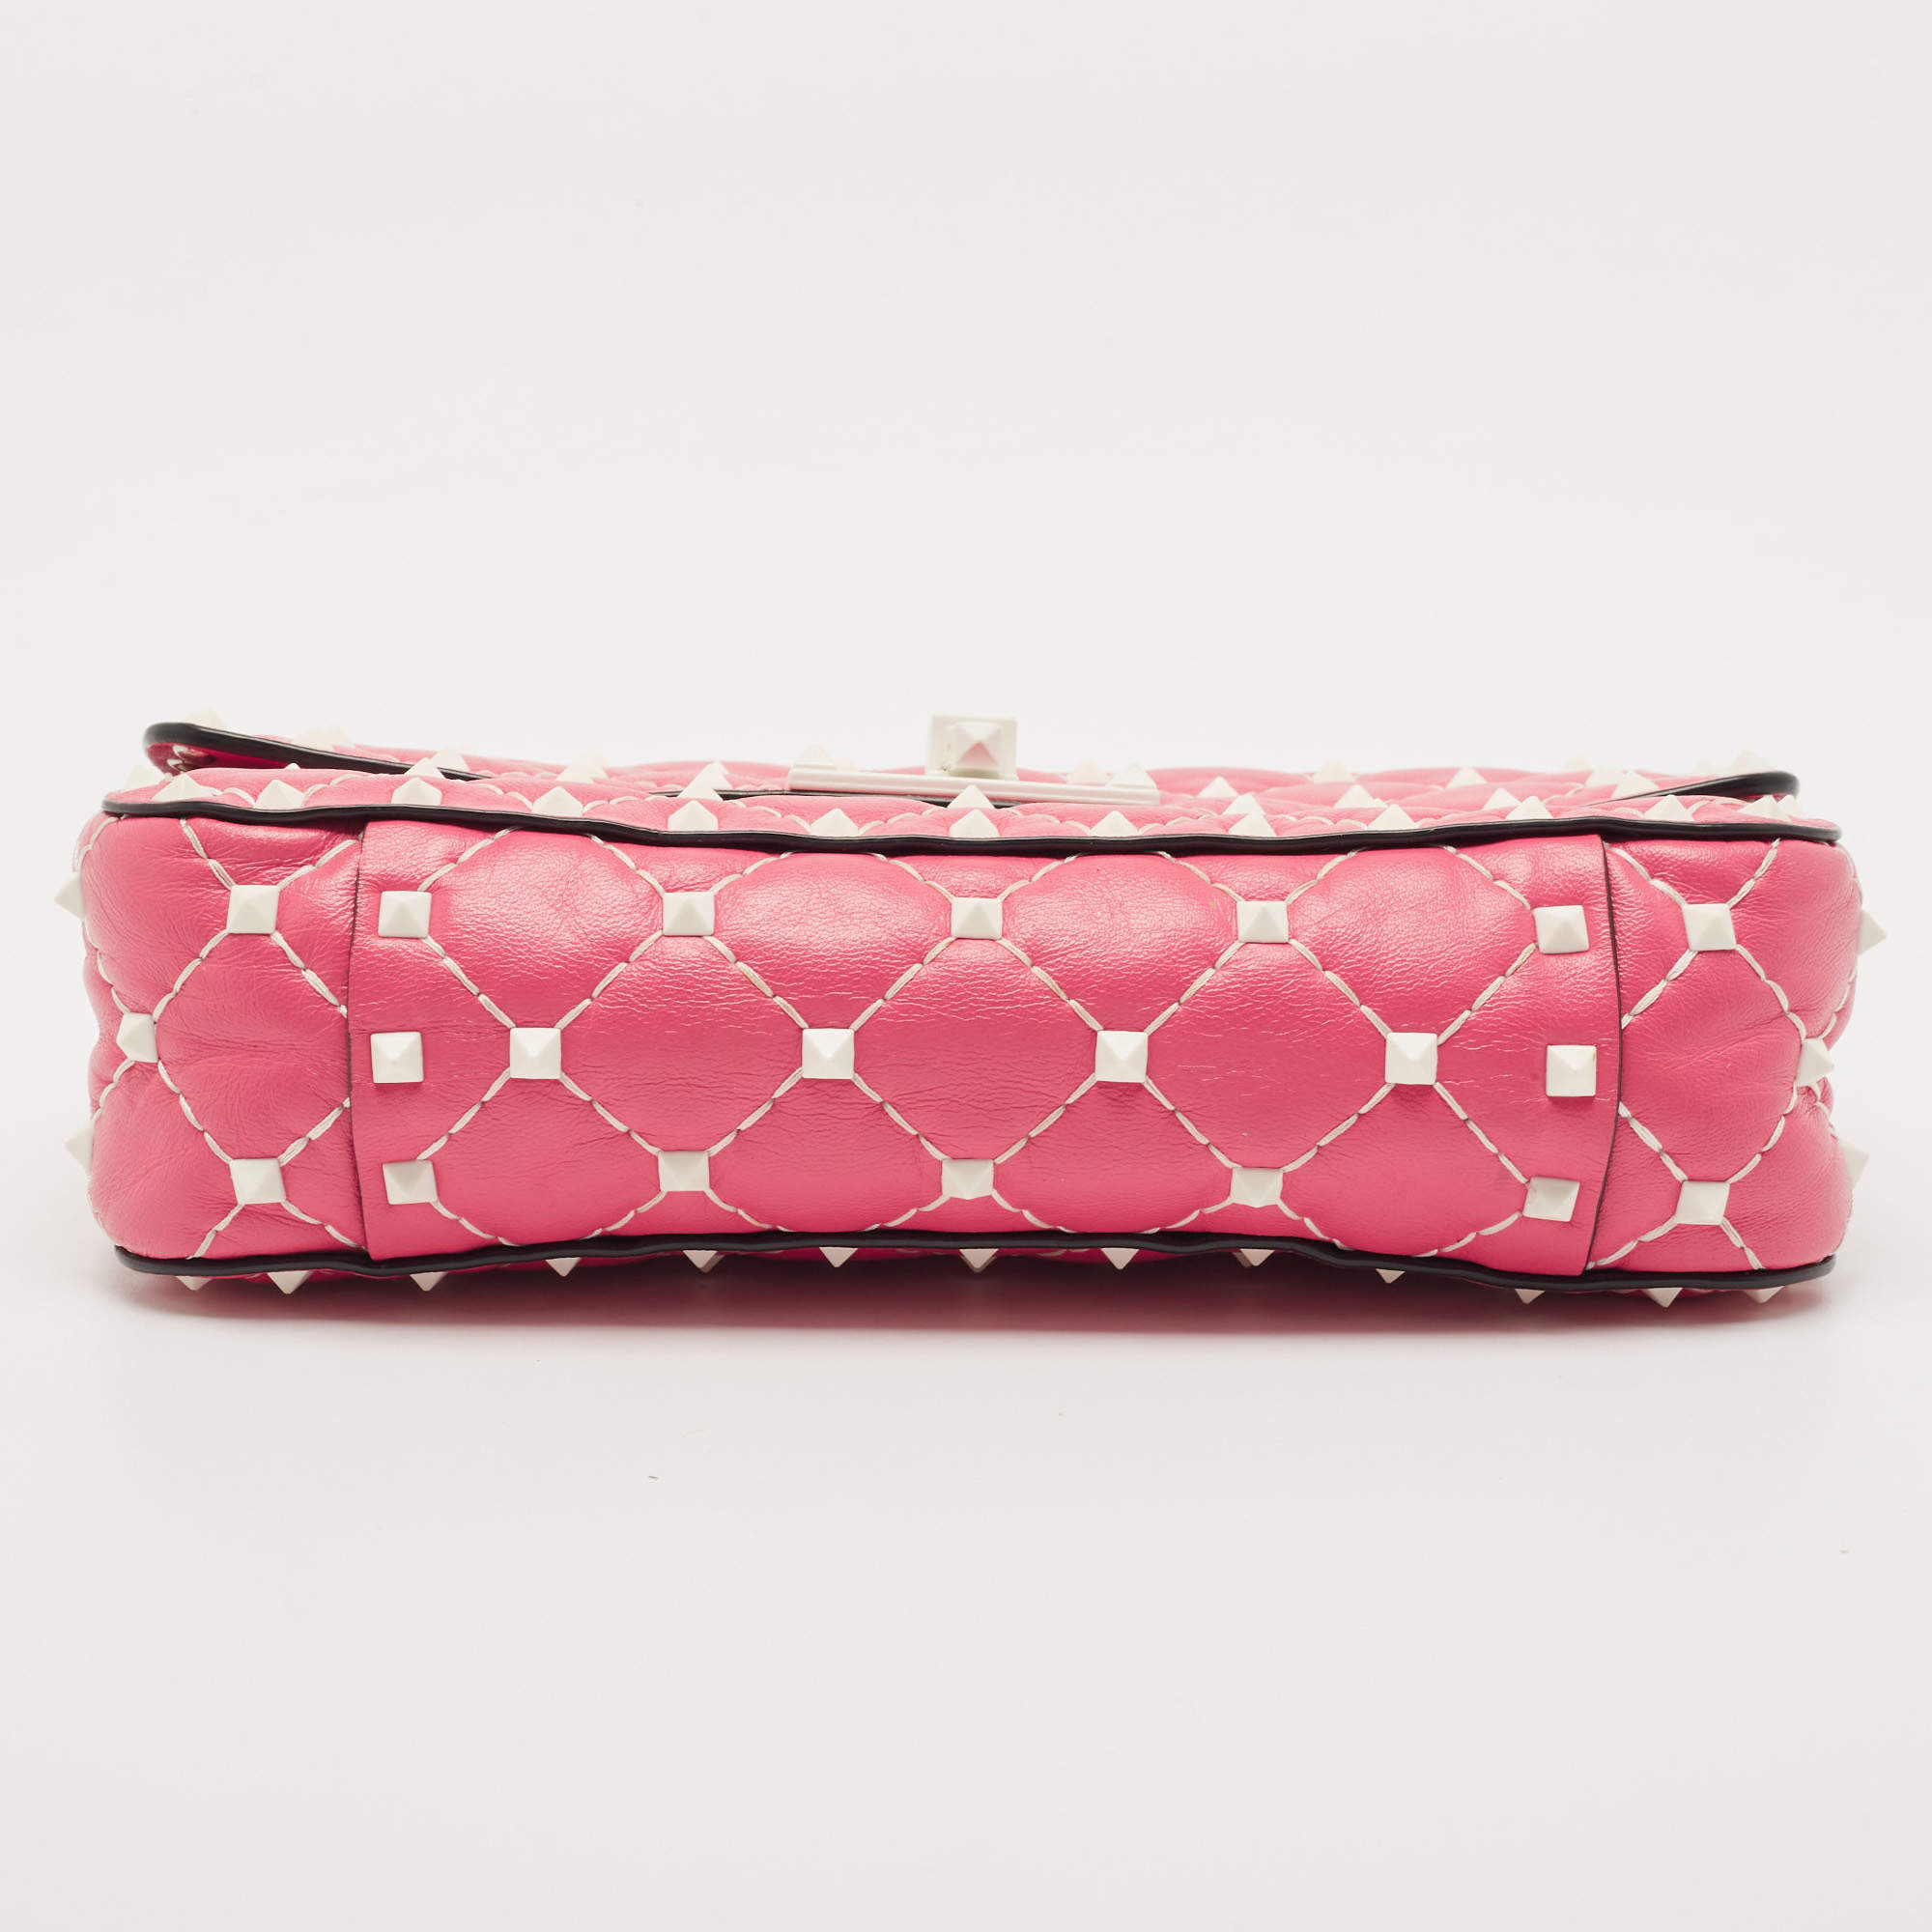 Valentino Garavani Rockstud Spike chain bag Pink – A Piece Lux